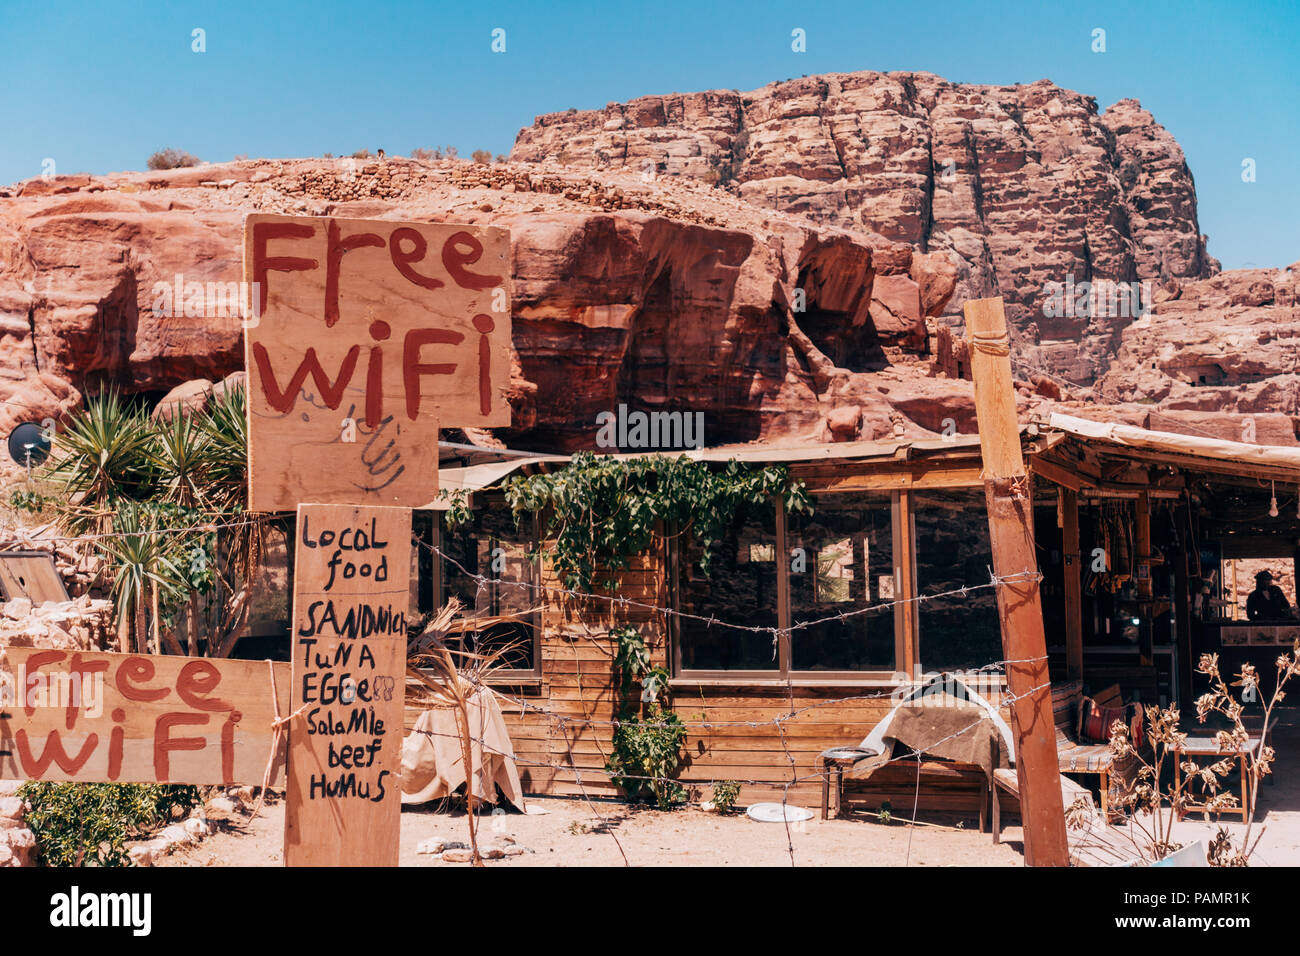 Une cabane en bois restaurant à la cité perdue de Petra, Jordanie, tente d'attirer les clients en faisant la promotion de leur menu alimentaire et internet wifi Banque D'Images